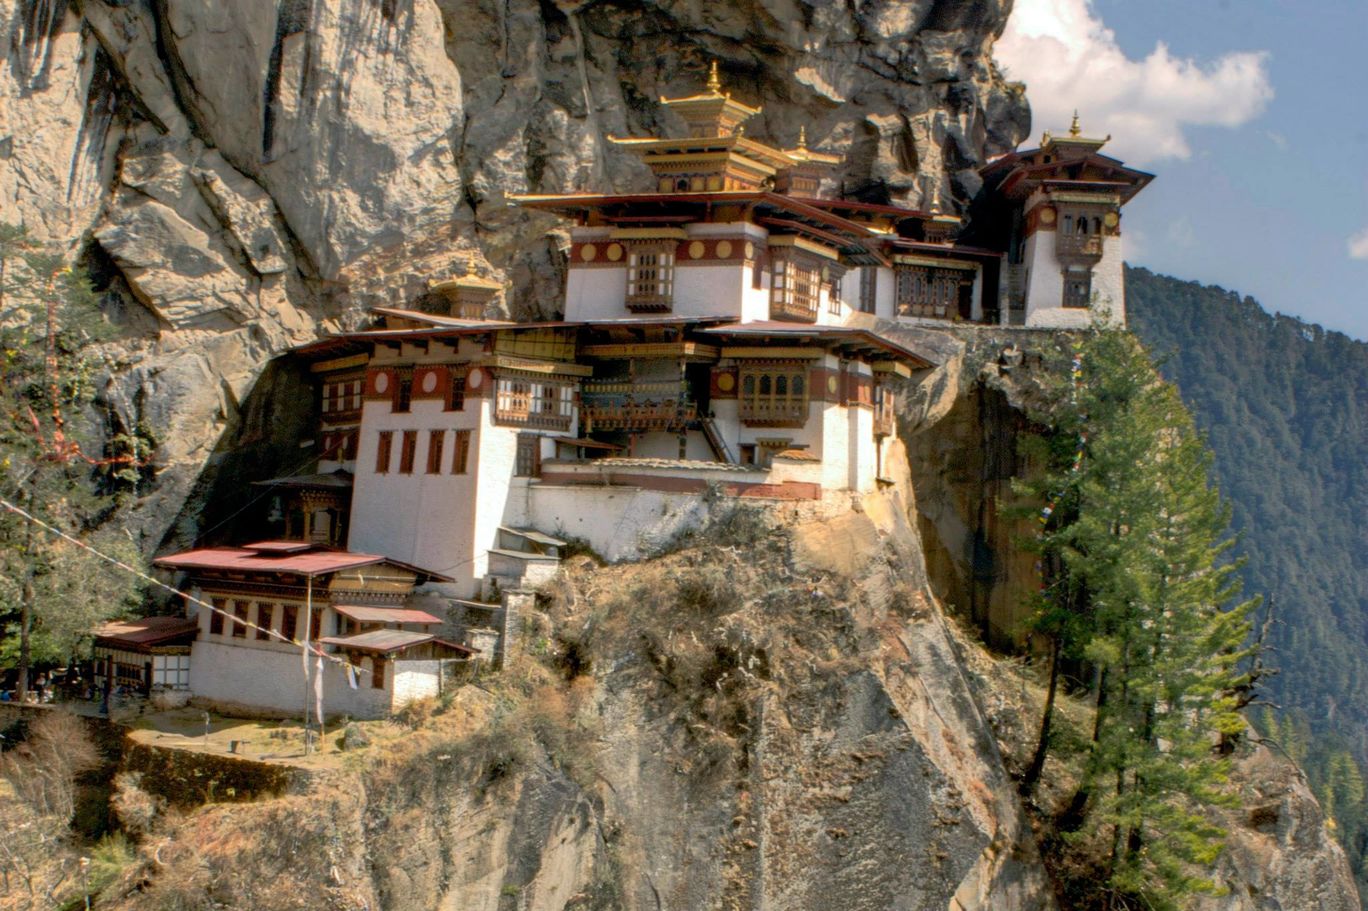 Photo of Bhutan and Darjeeling By Harshada Wadkar